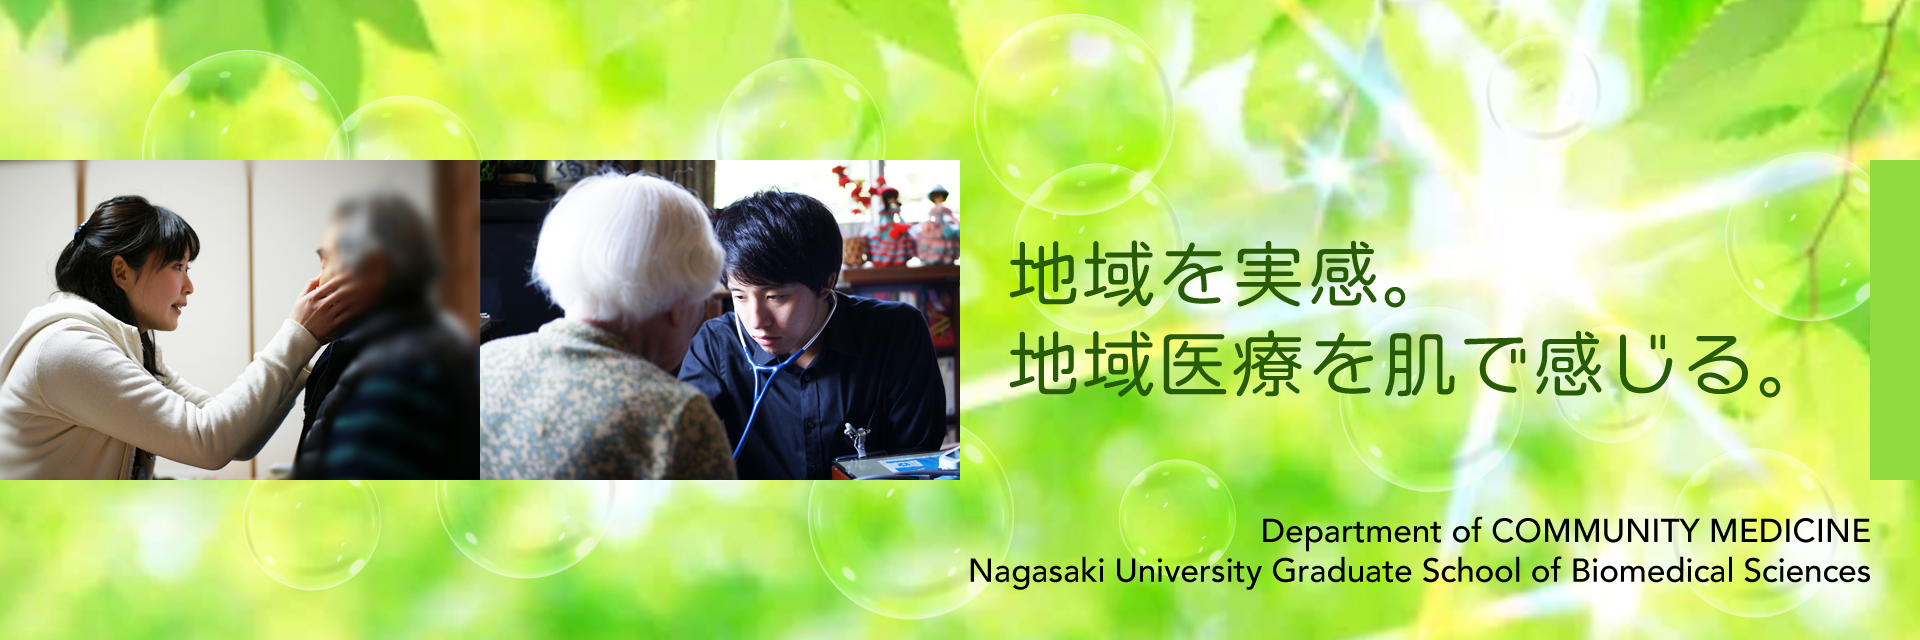 地域を実感。地域医療を肌で感じる。：Department of Community Medicine, Nagasaki University Graduate School of Biomedical Sciences